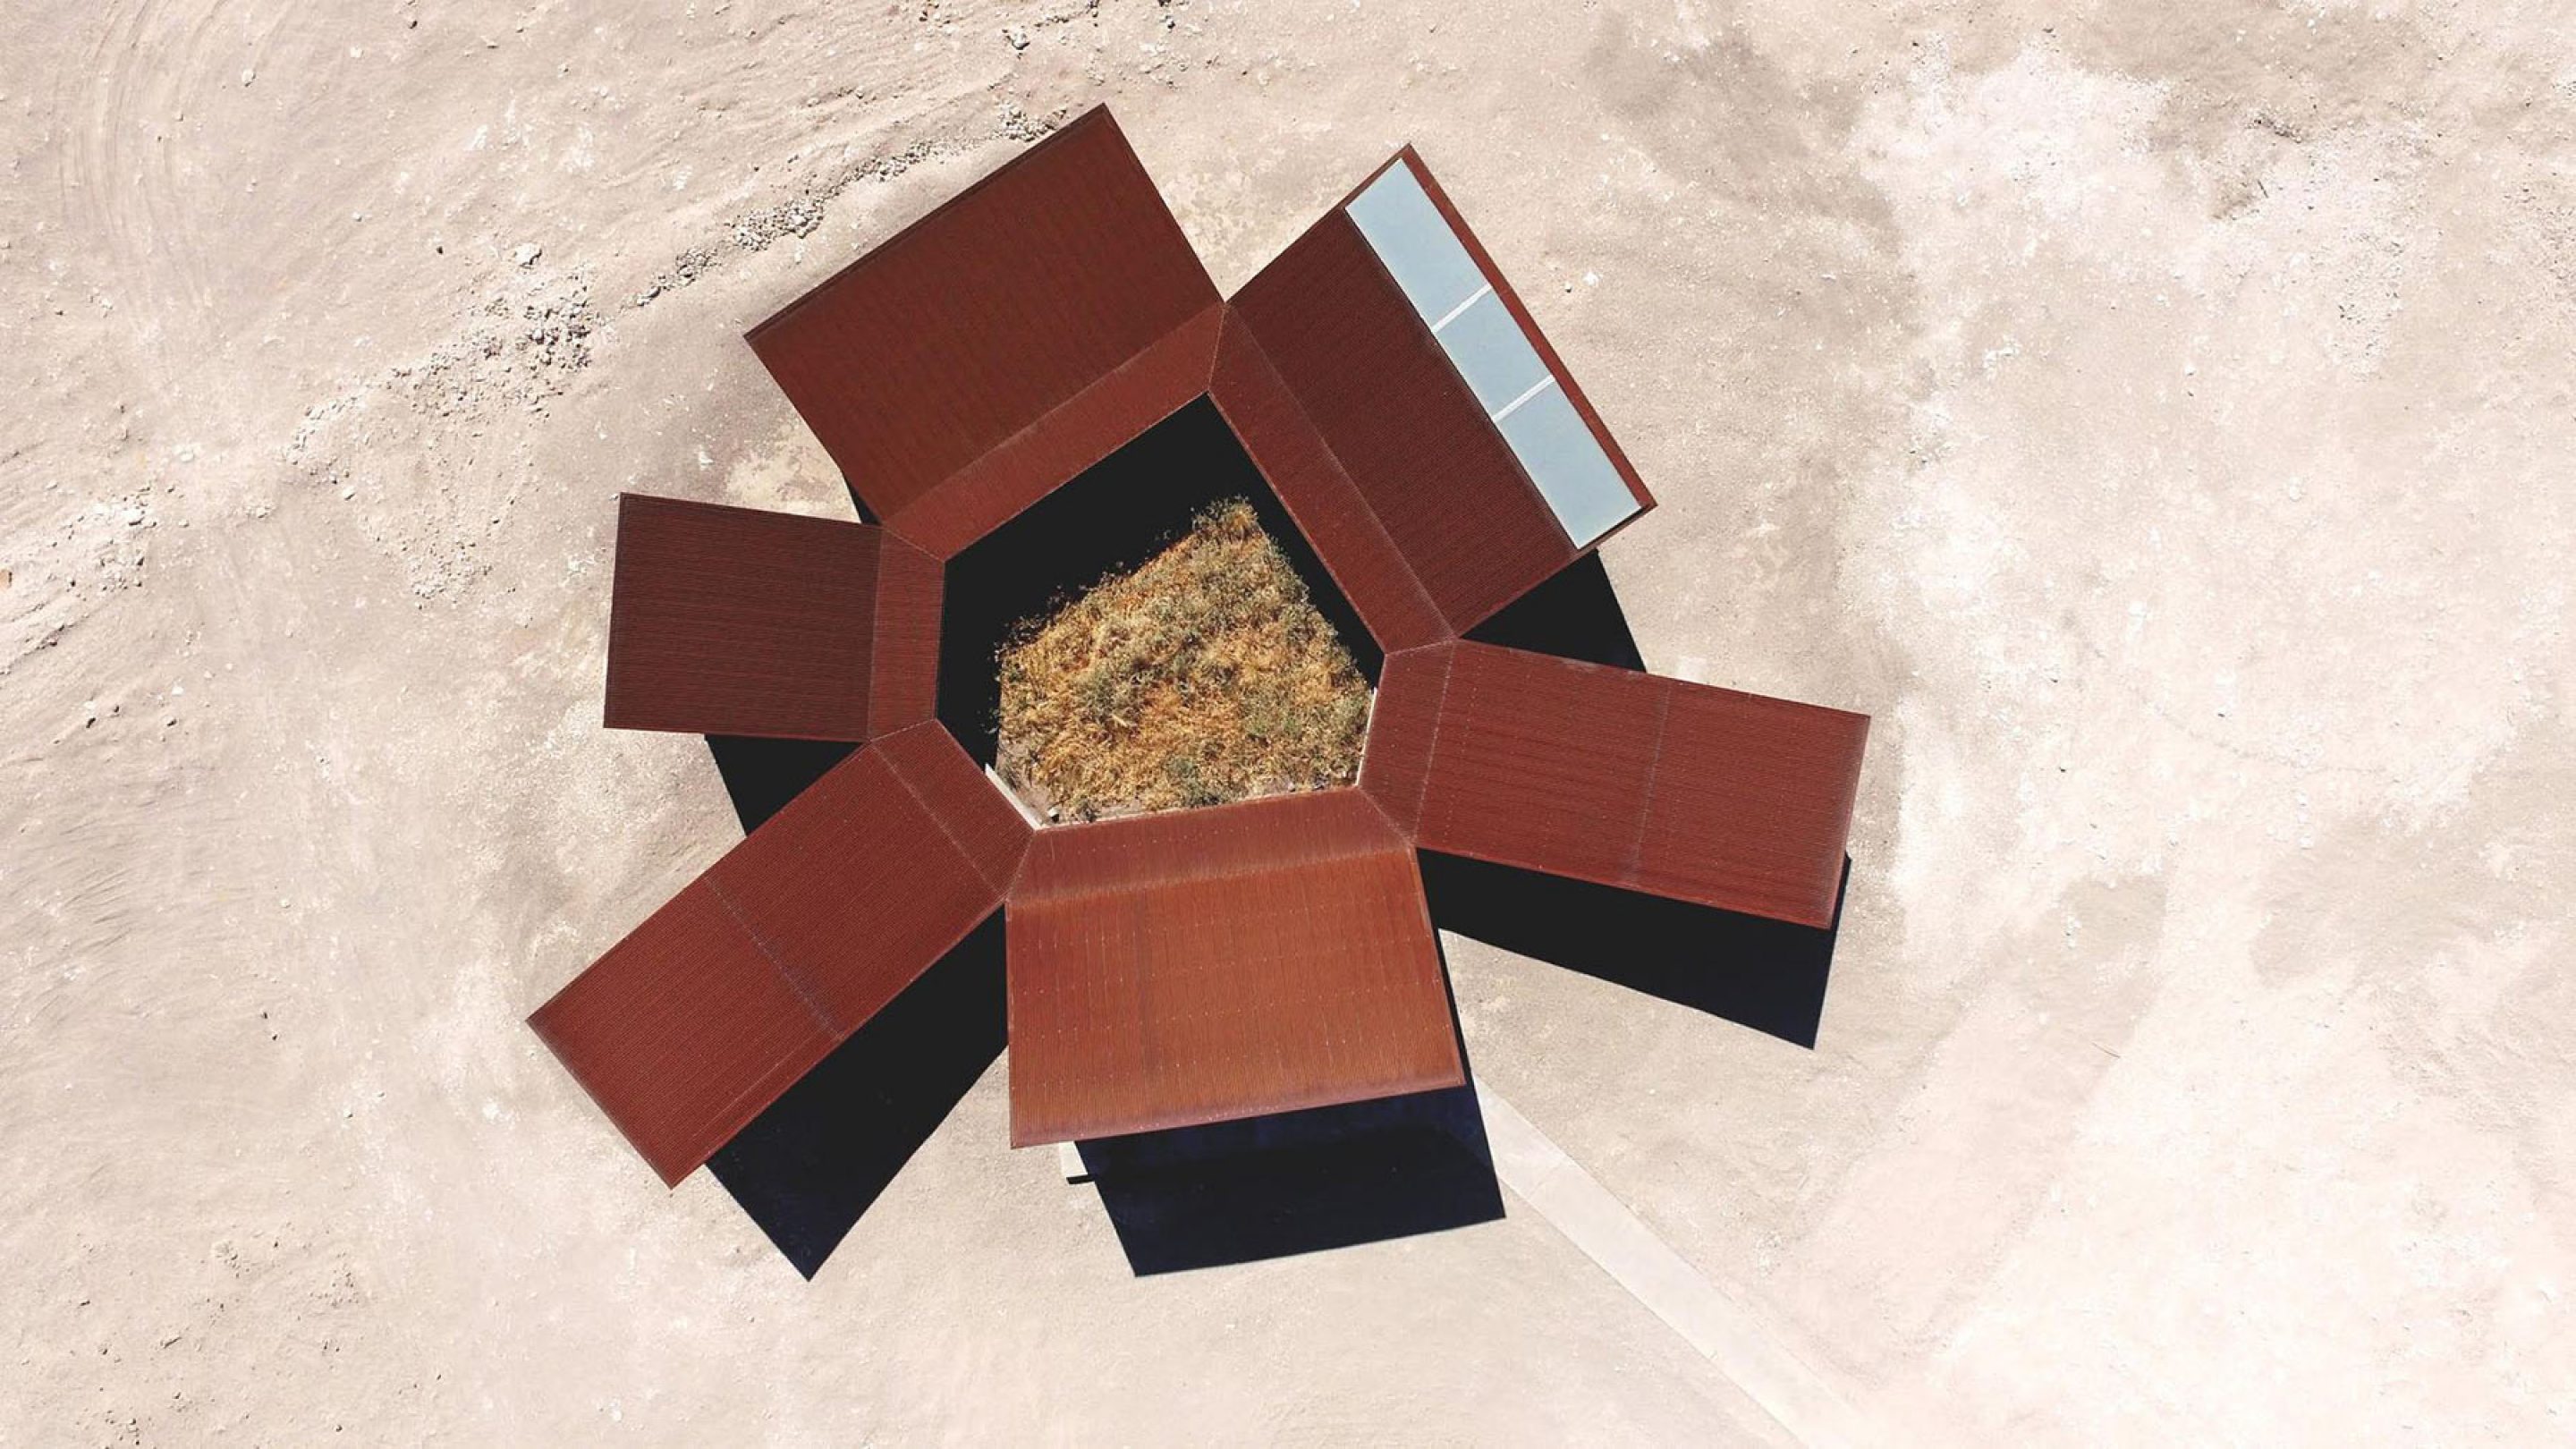 iGNANT-Architecture-Desert-Interpretation-Center-Emilio-Marin-Juan-Carlos-Lopez-14